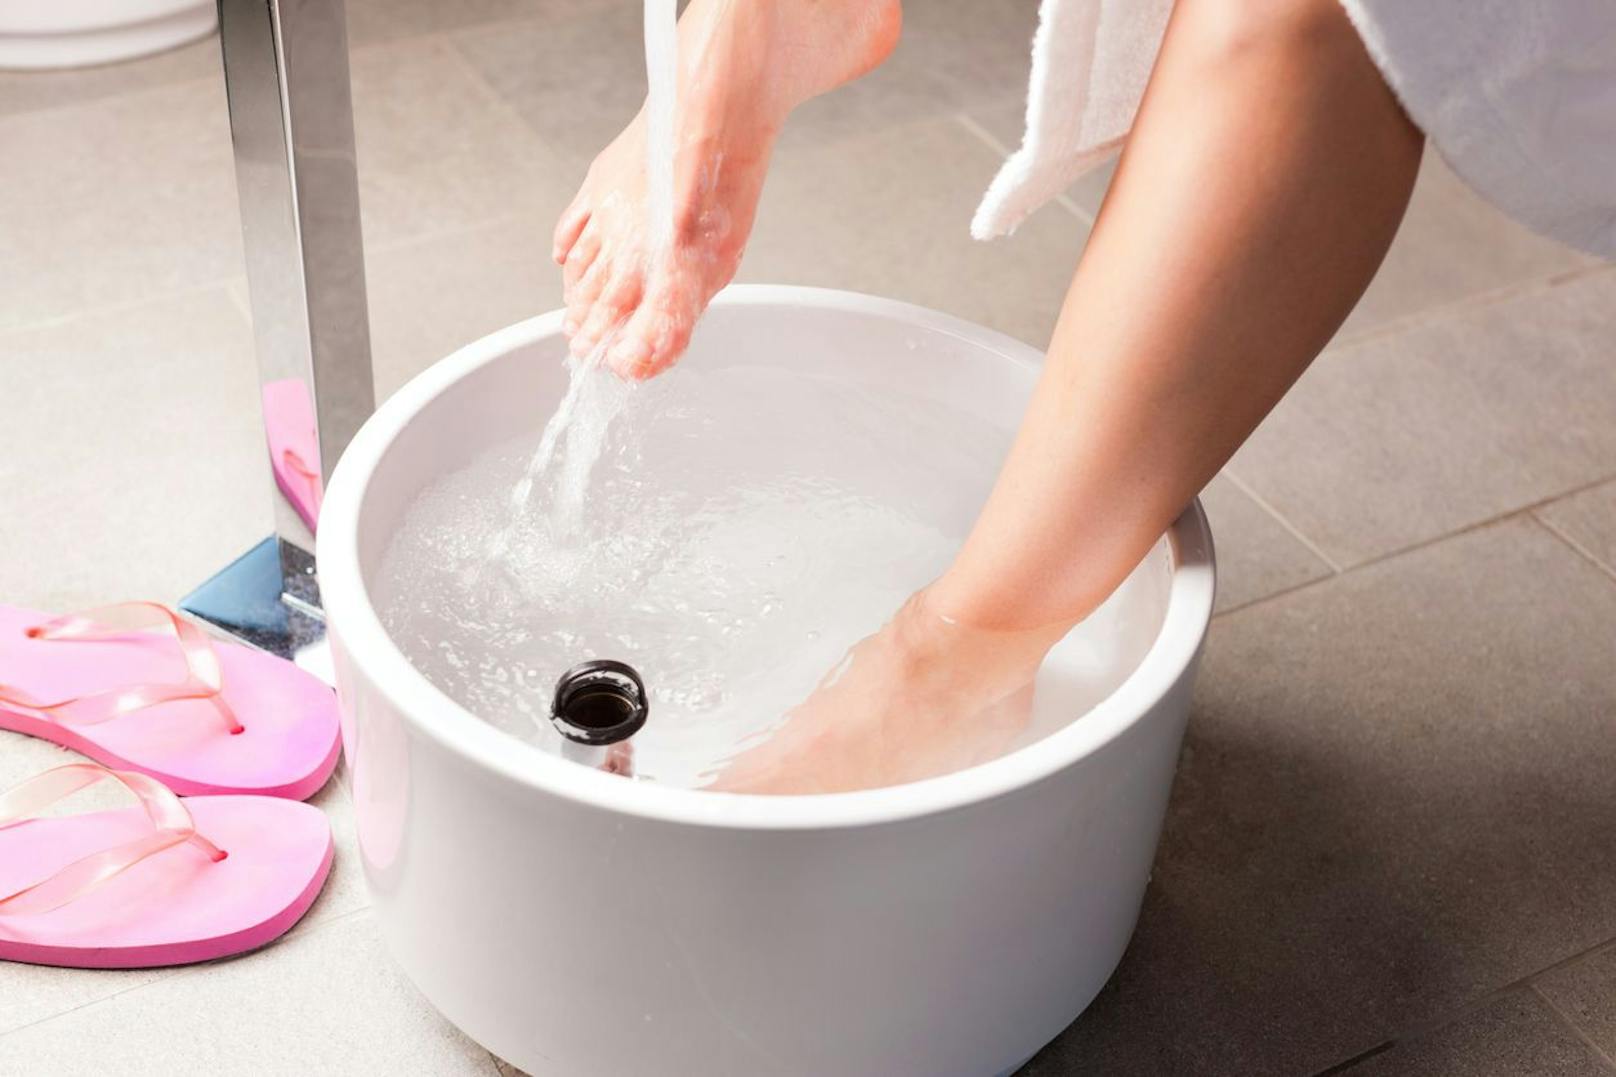 Eine nachhaltige Fußpflege klappt am besten von zu Hause. Ein lauwarmes Bad weicht deine Füße schön auf, damit du deine Hornhaut entfernen kannst und weitere Nagelpflege-Kuren unternehmen kannst.